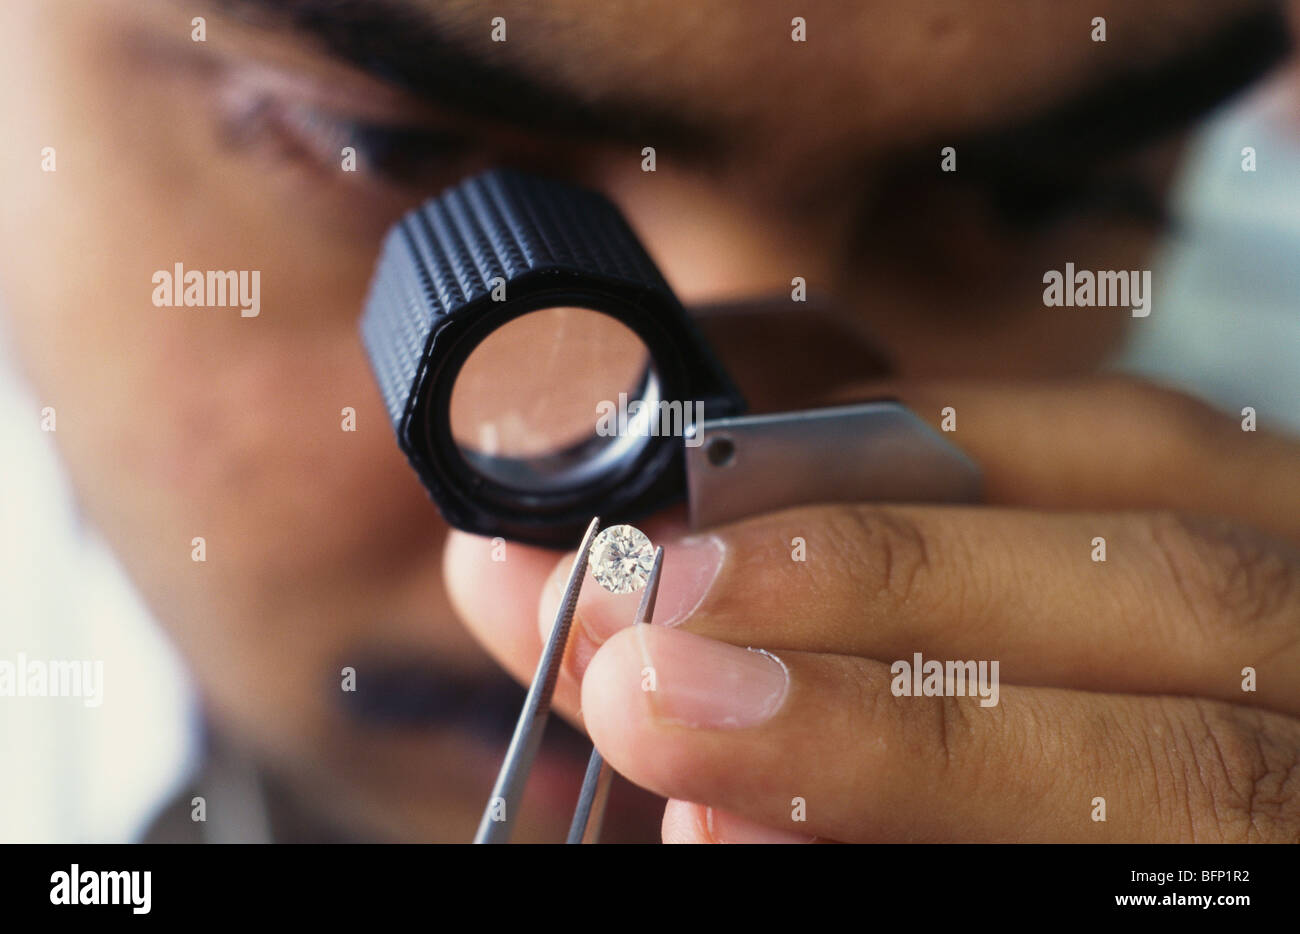 Man checking diamond through magnifying glass ; India ; asia Stock Photo